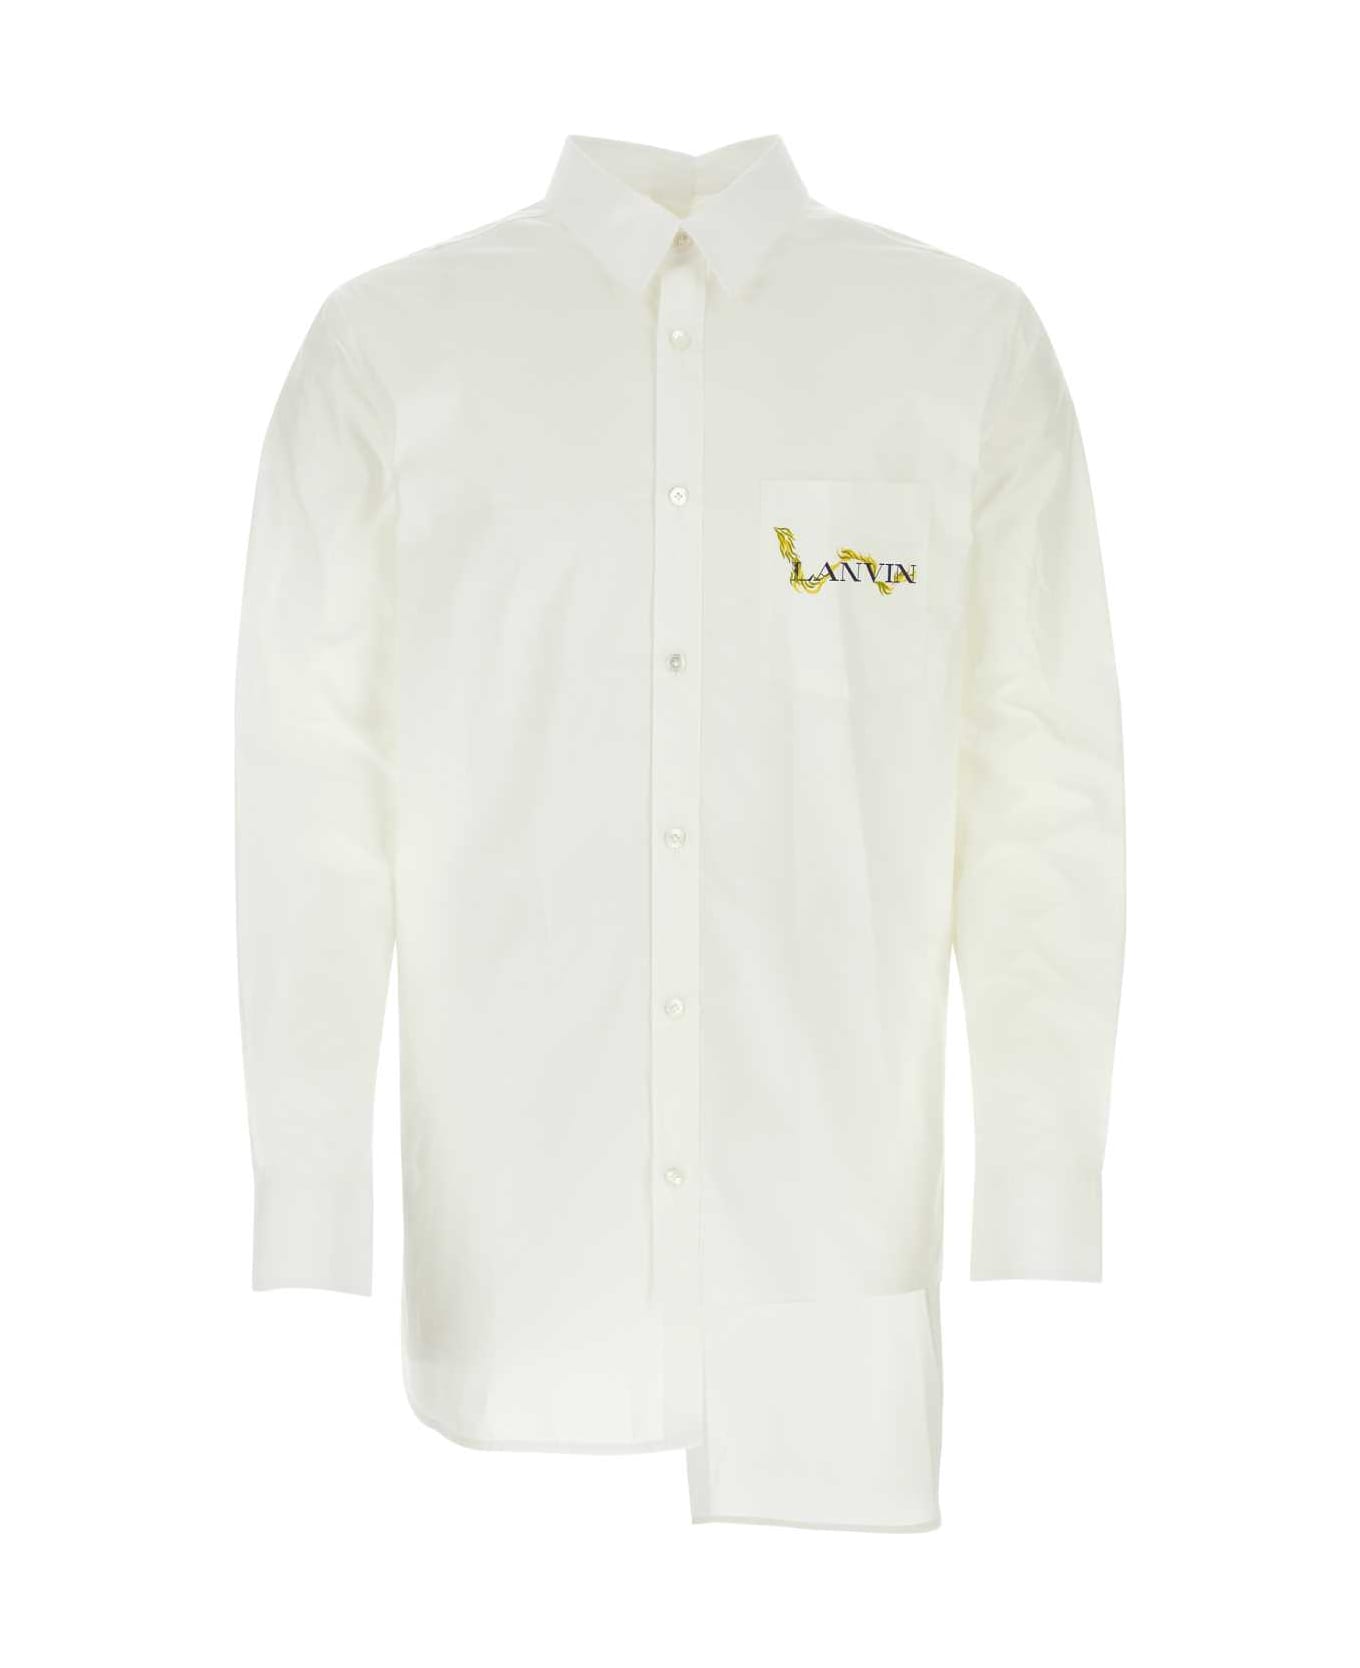 Lanvin White Poplin Shirt - OPTICWHITE シャツ